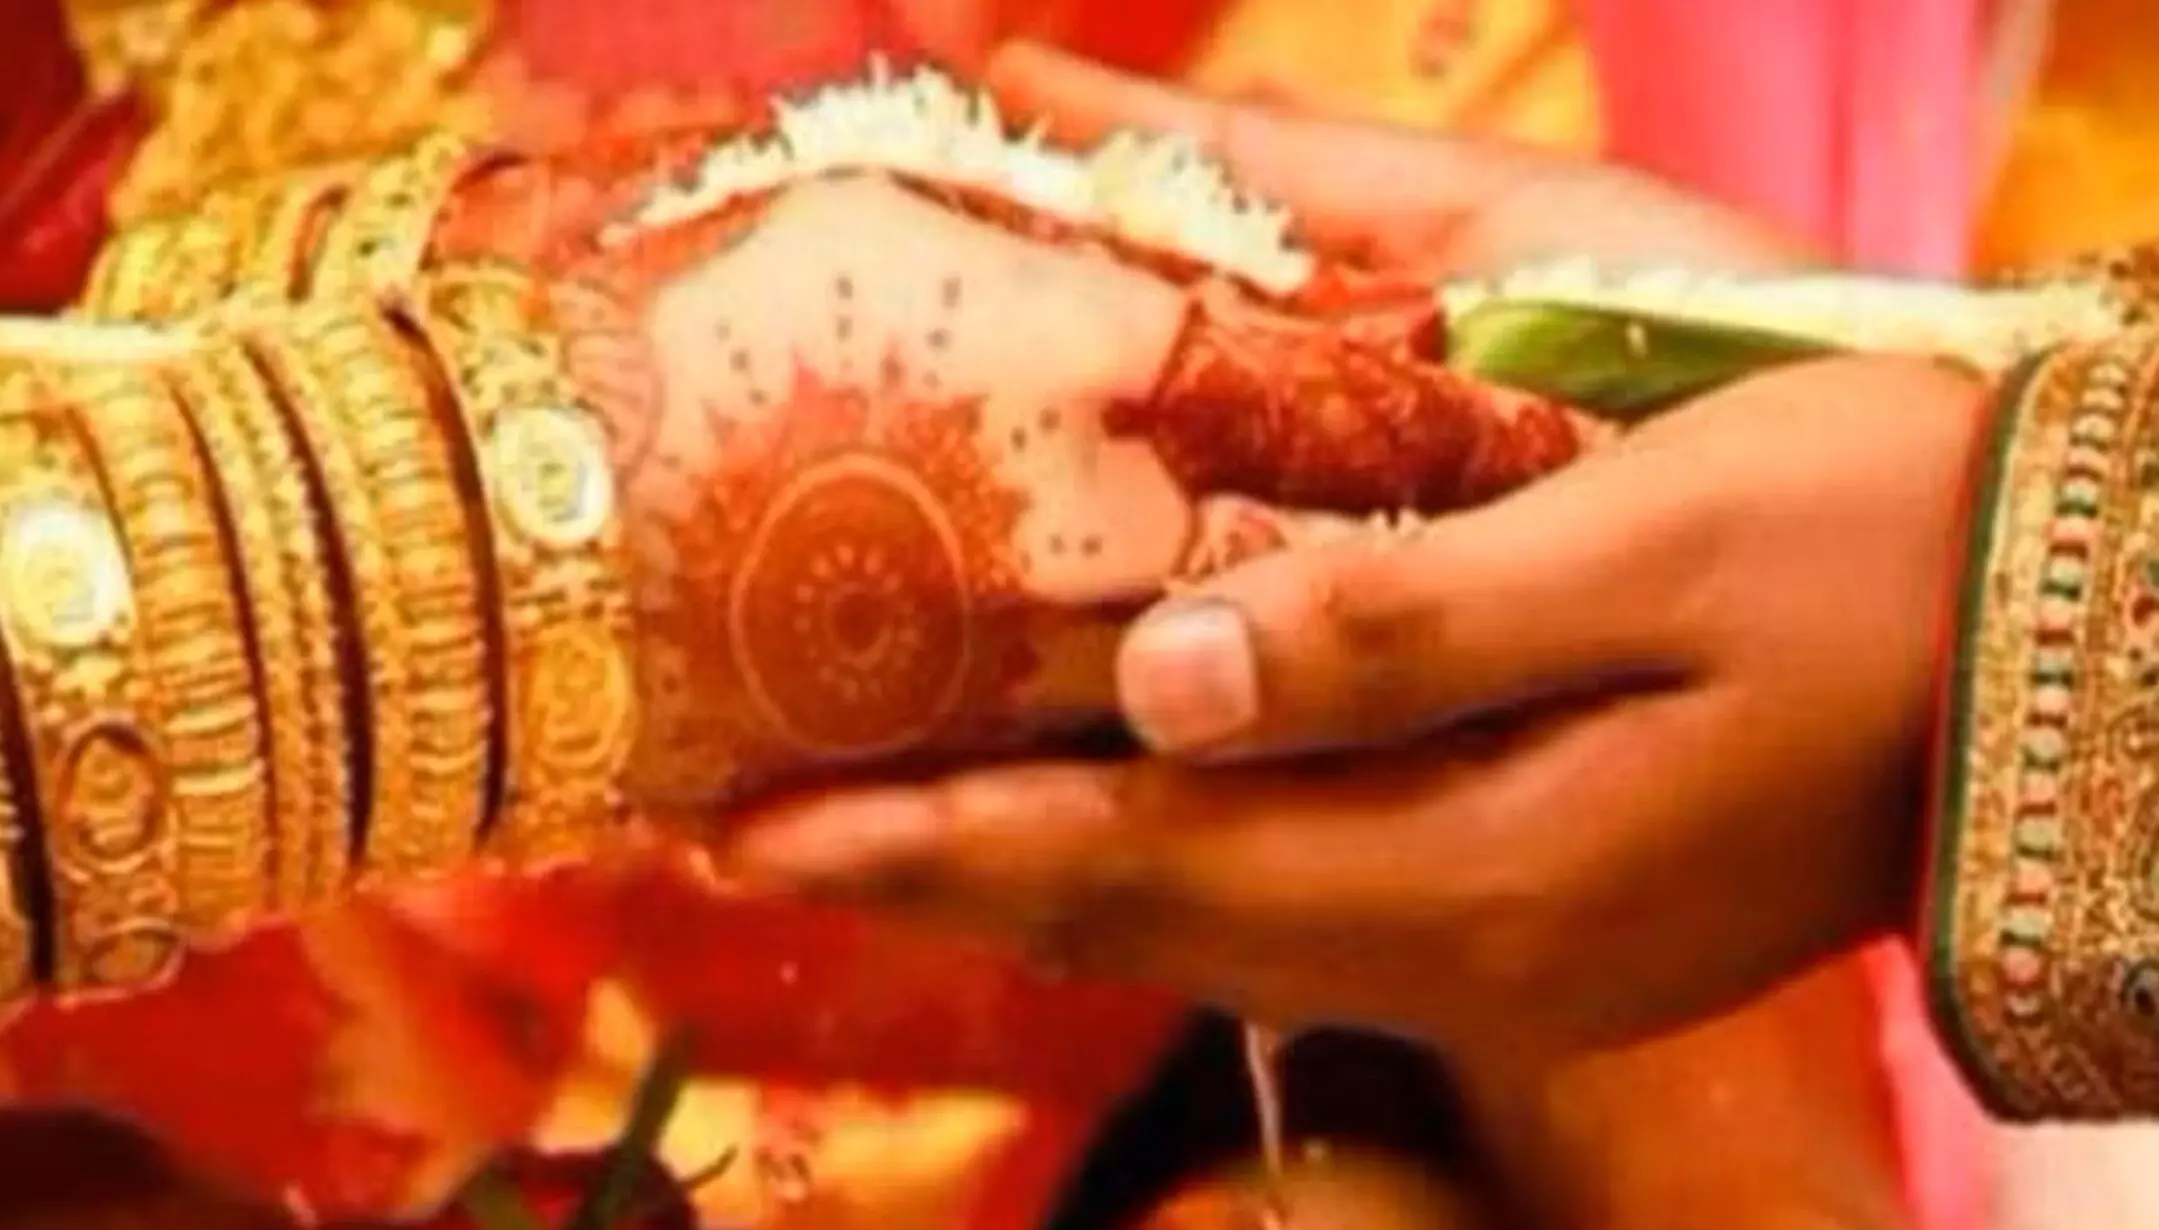 Lucknow News: हिंदू विवाह में कन्यादान एक अनिवार्य रस्म नहीं, सात फेरे ही शादी के लिए काफी: इलाहाबाद हाई कोर्ट